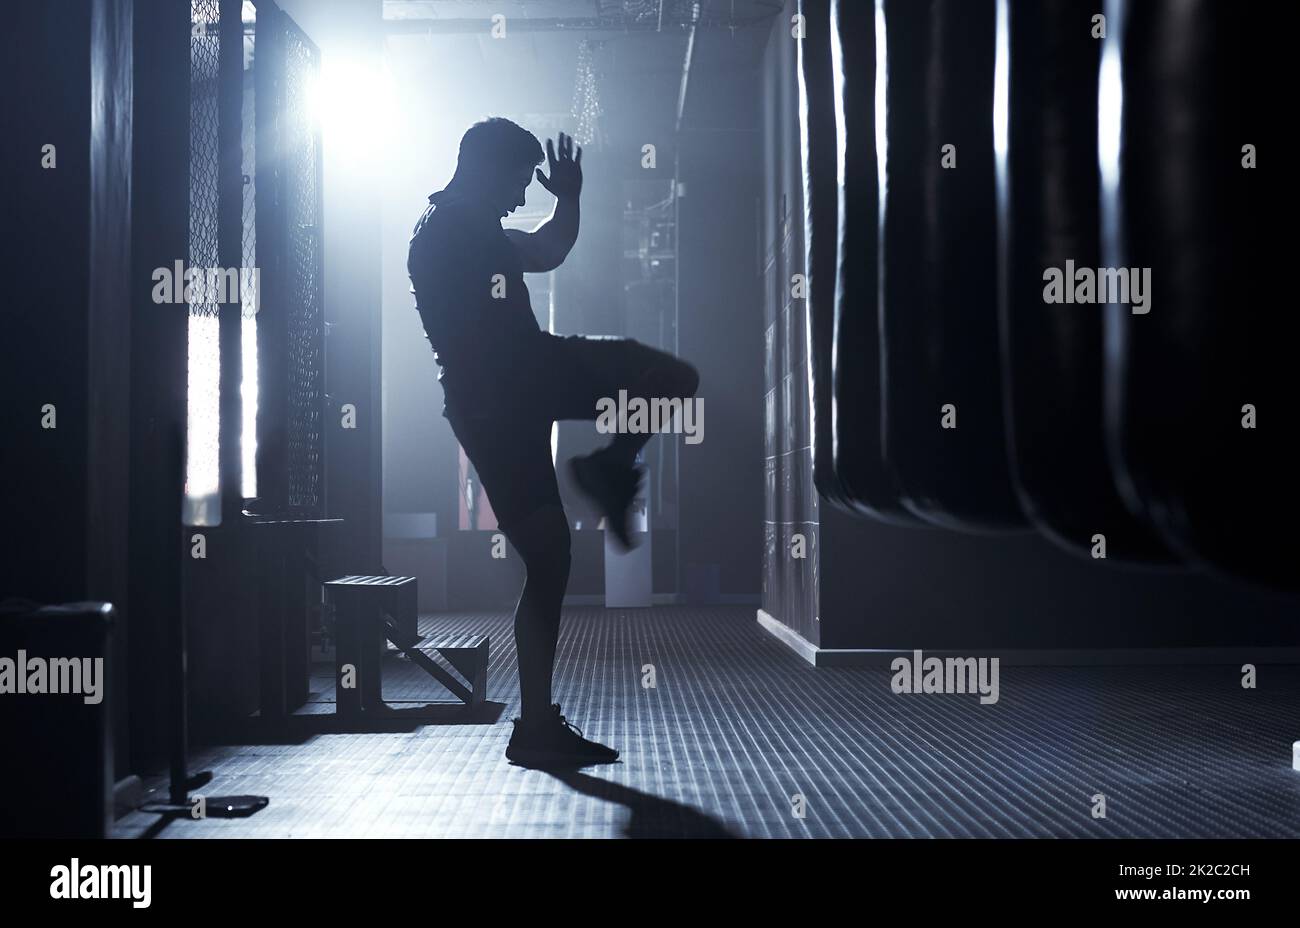 Wahre Krieger sind instinktiv heftig. Aufnahme eines sportlichen jungen Mannes beim Kickboxing in einer Turnhalle. Stockfoto